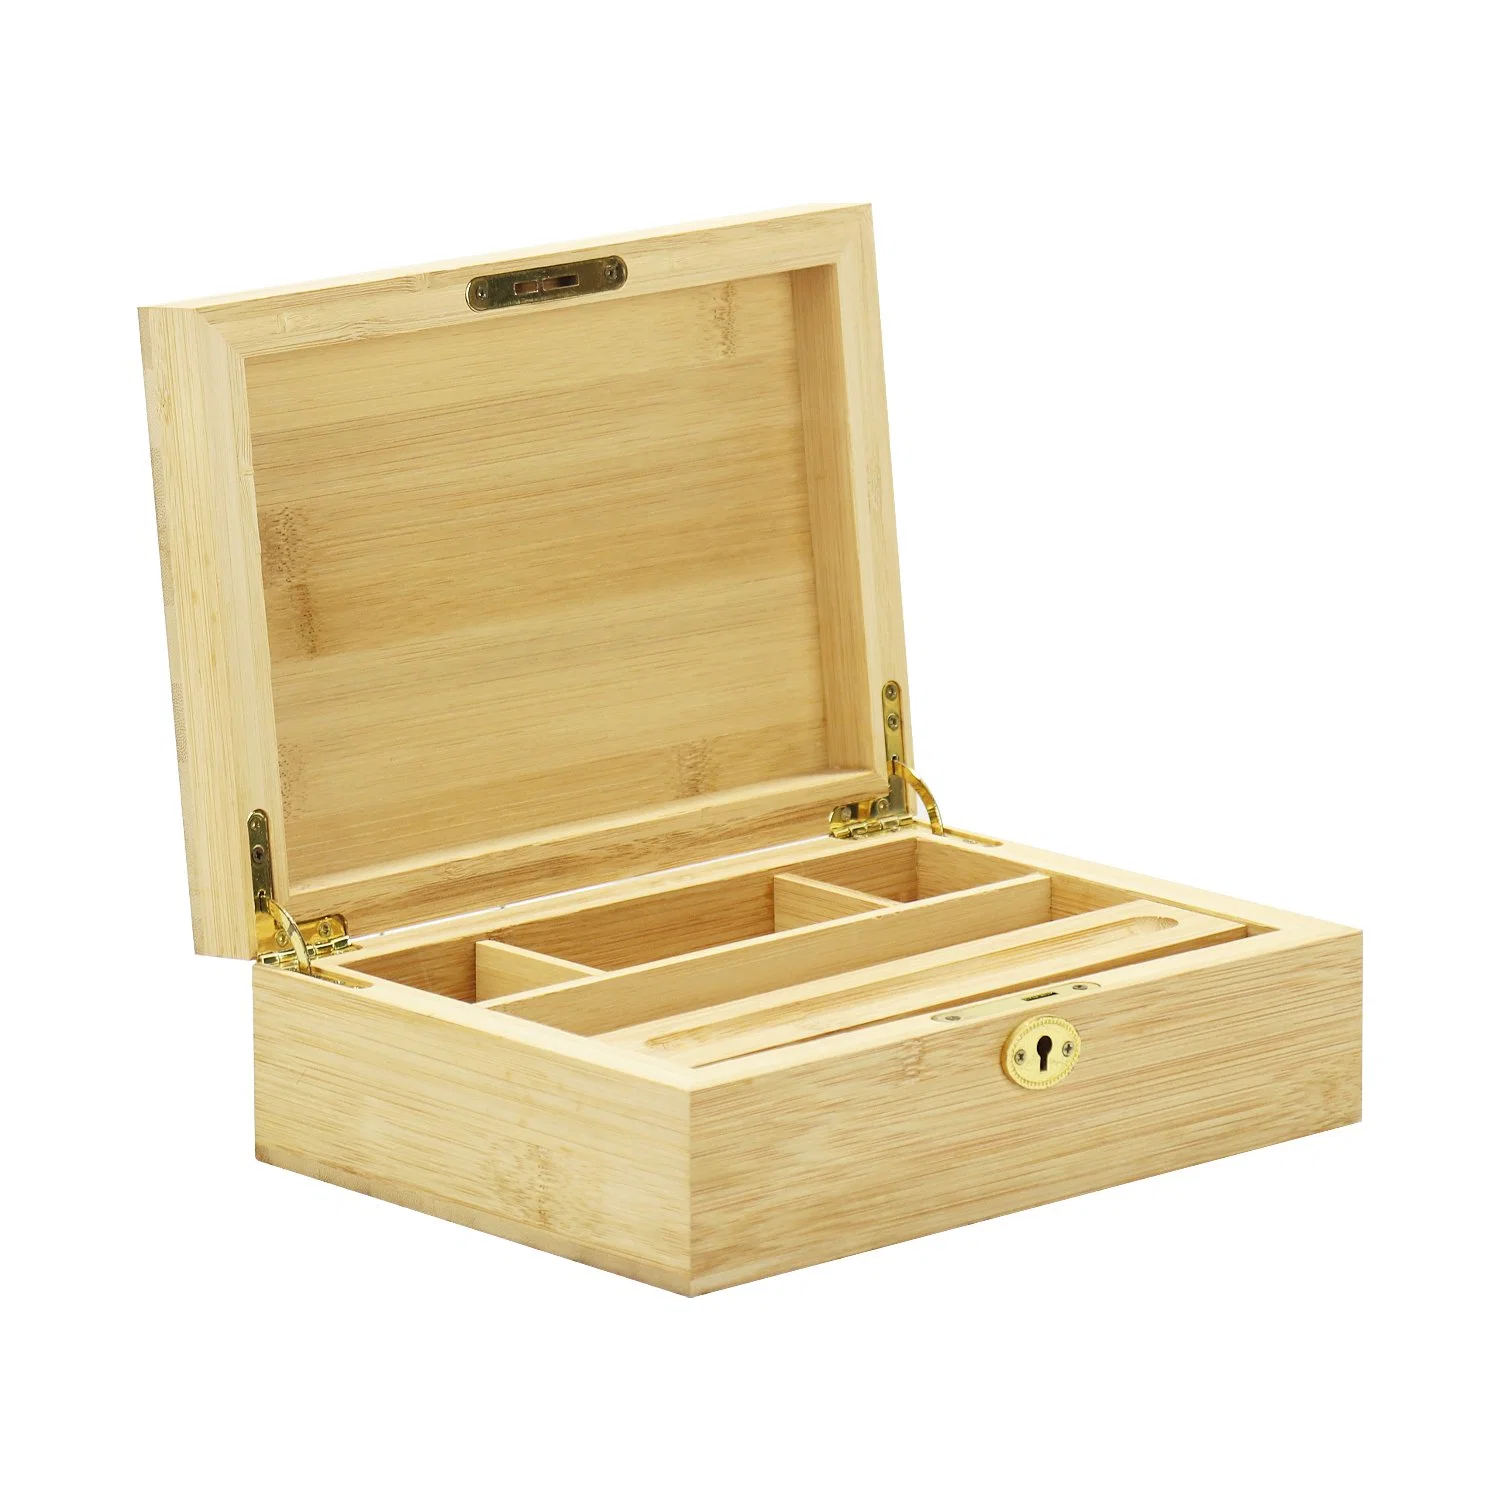 Caixa de madeira para caixilhos de bambu com tabuleiro de enrolar para fumadores Caixas de madeira com tampa articulada